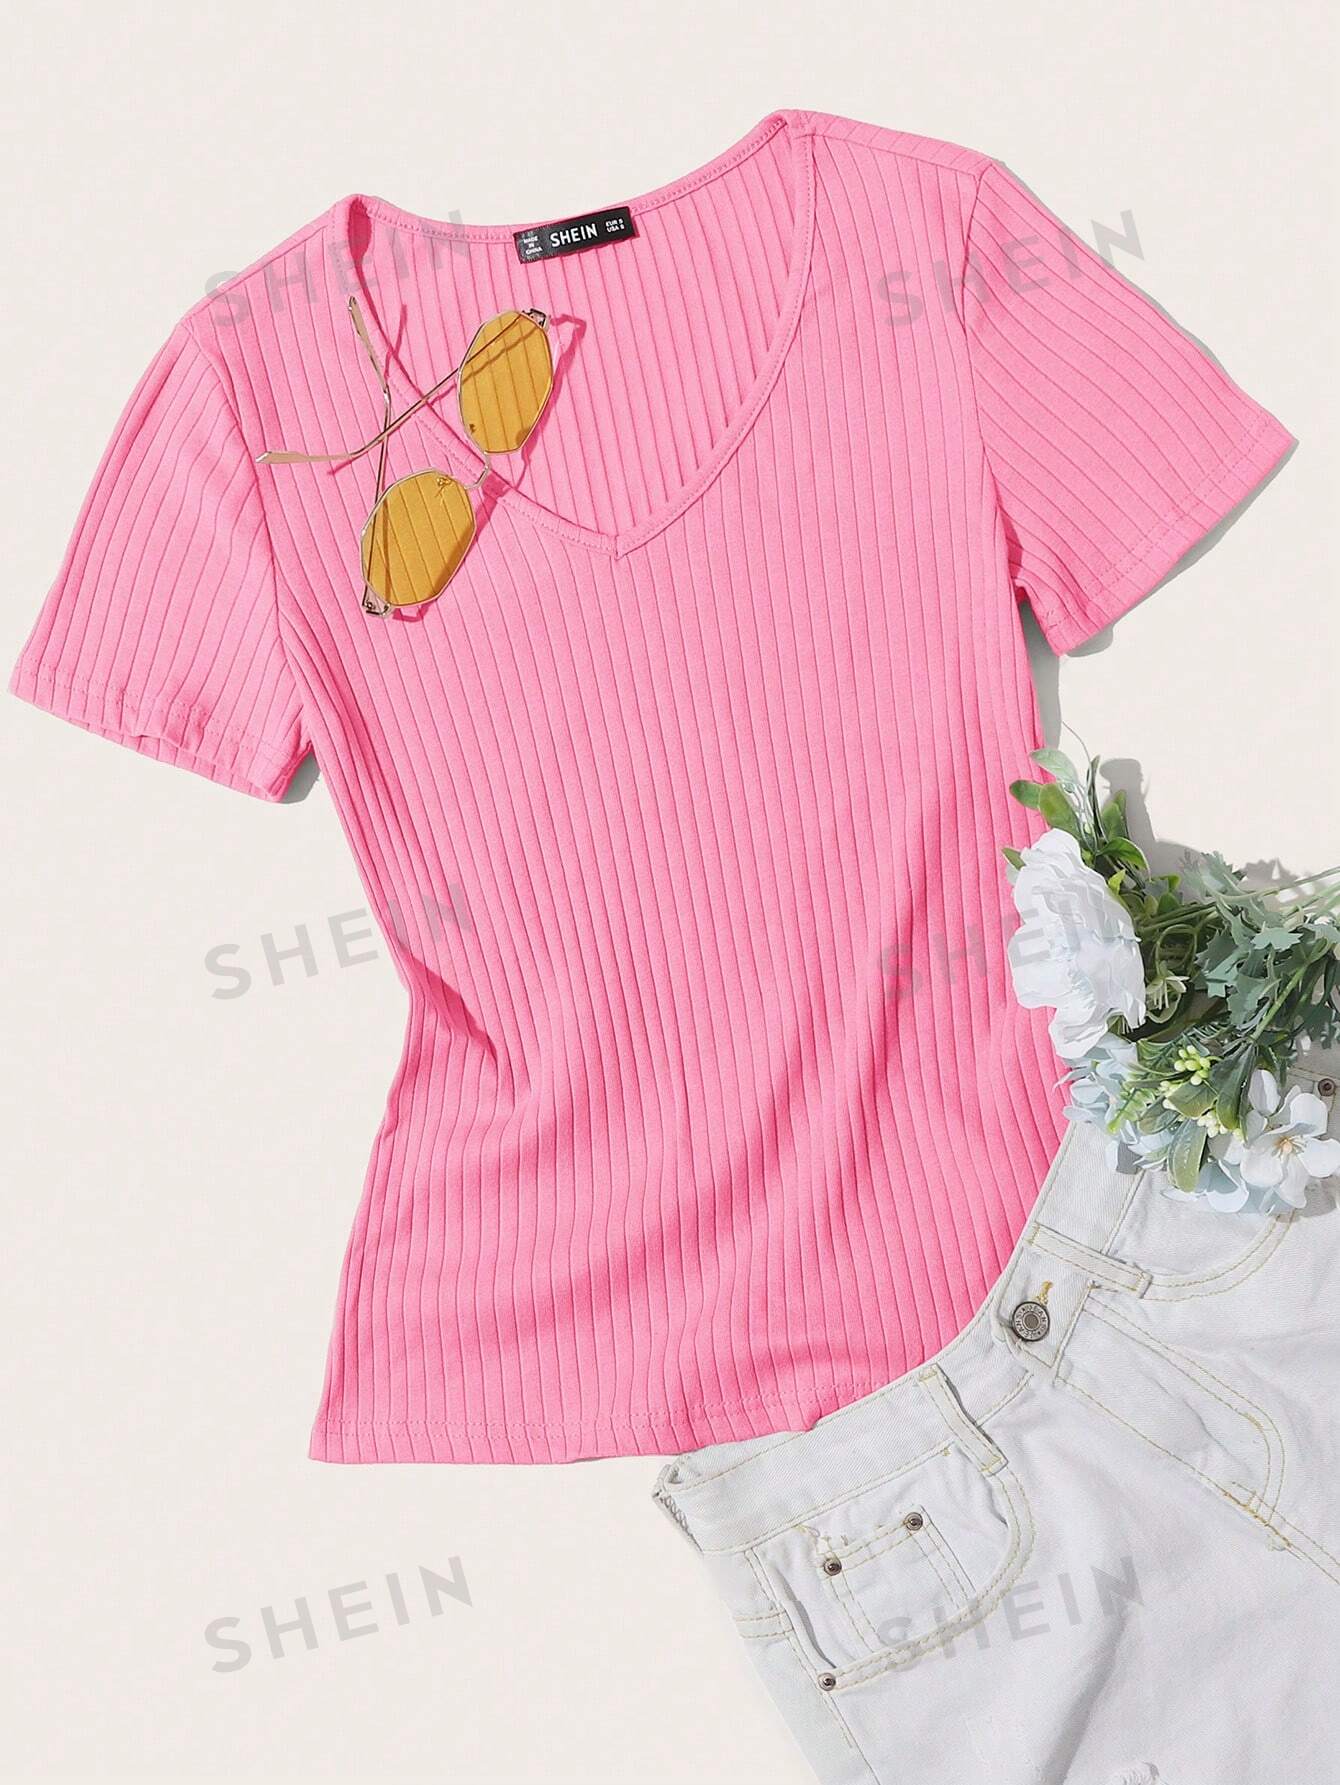 SHEIN Essnce однотонная повседневная трикотажная футболка в рубчик с короткими рукавами, детский розовый